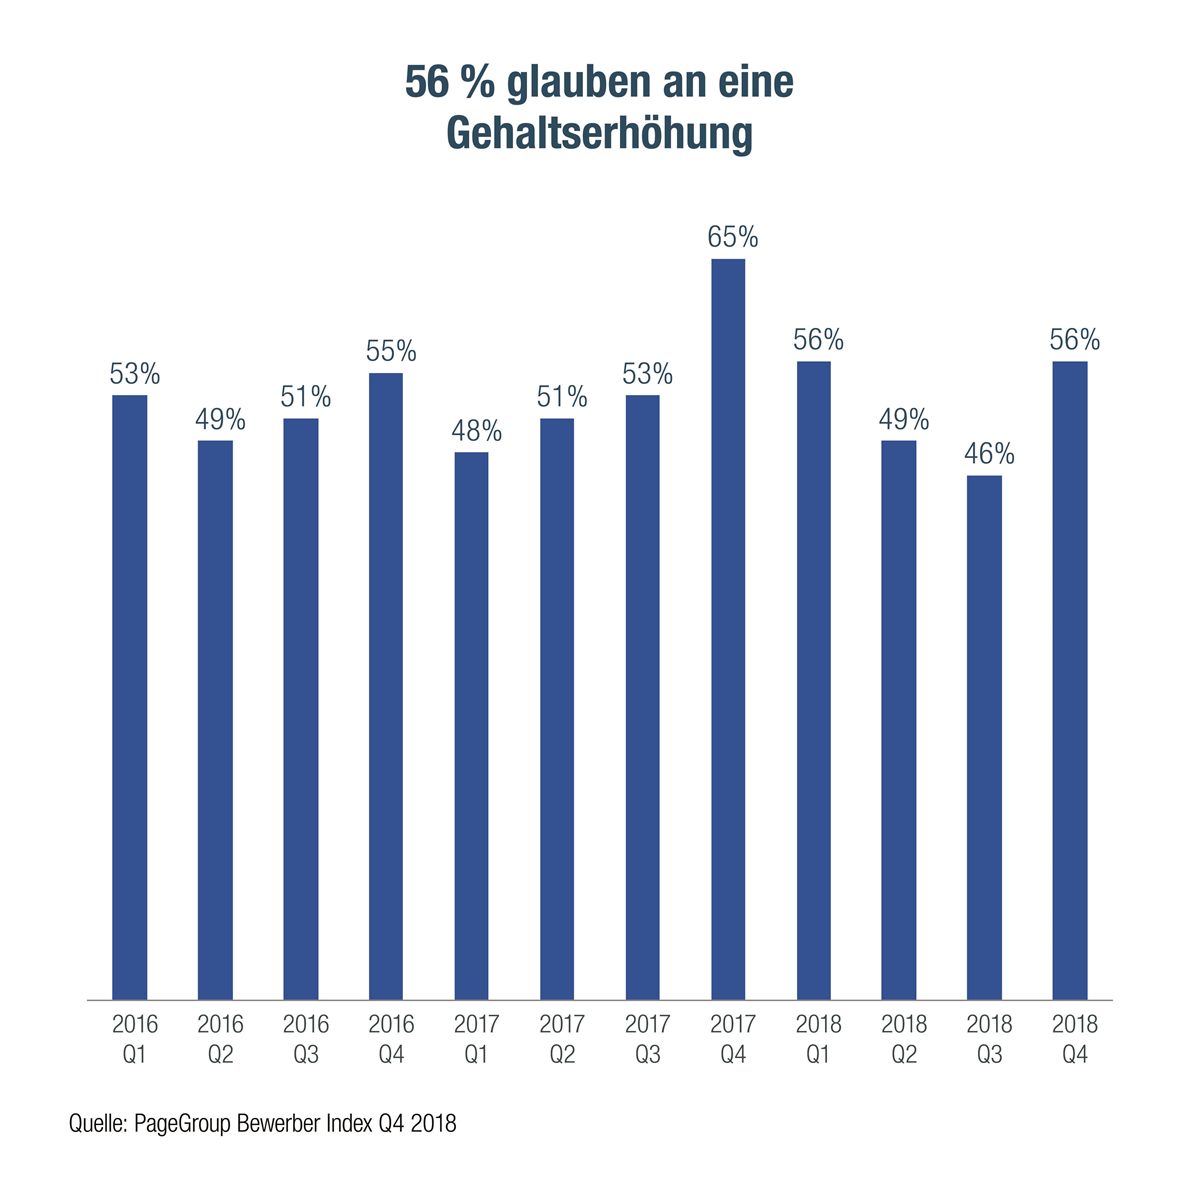 56% der Österreicher glauben an eine Gehaltserhöhung